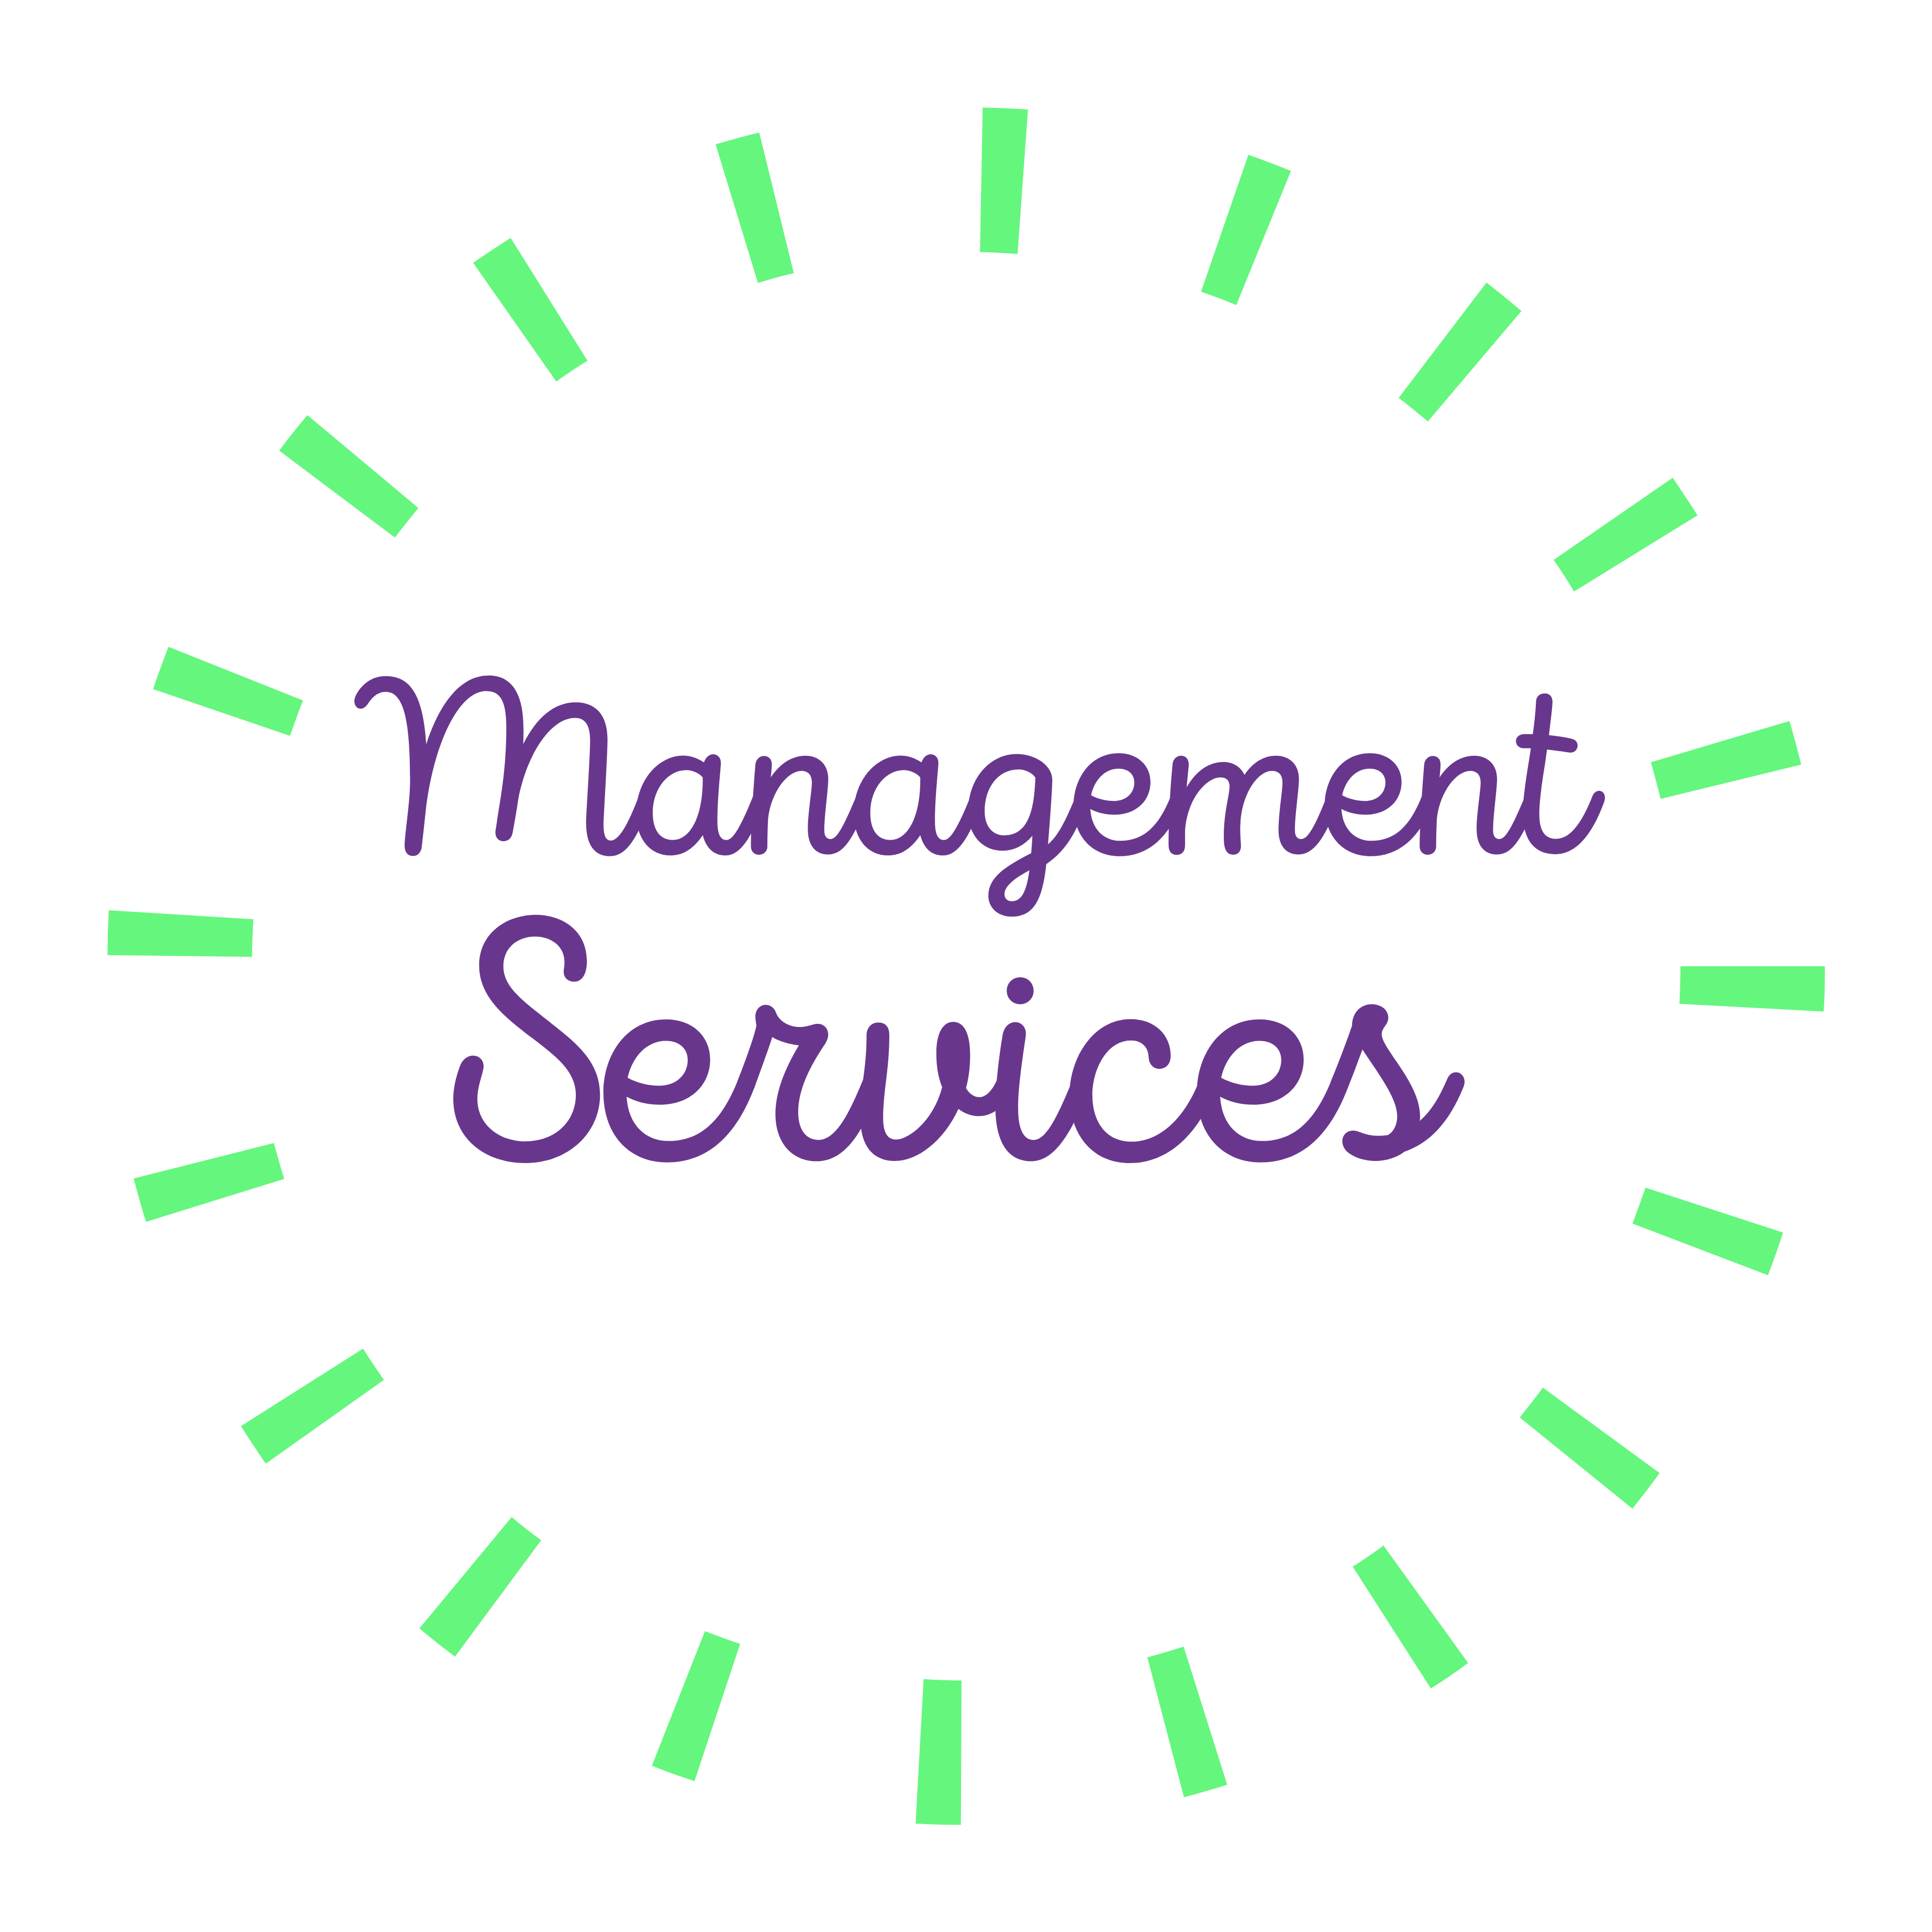 management services